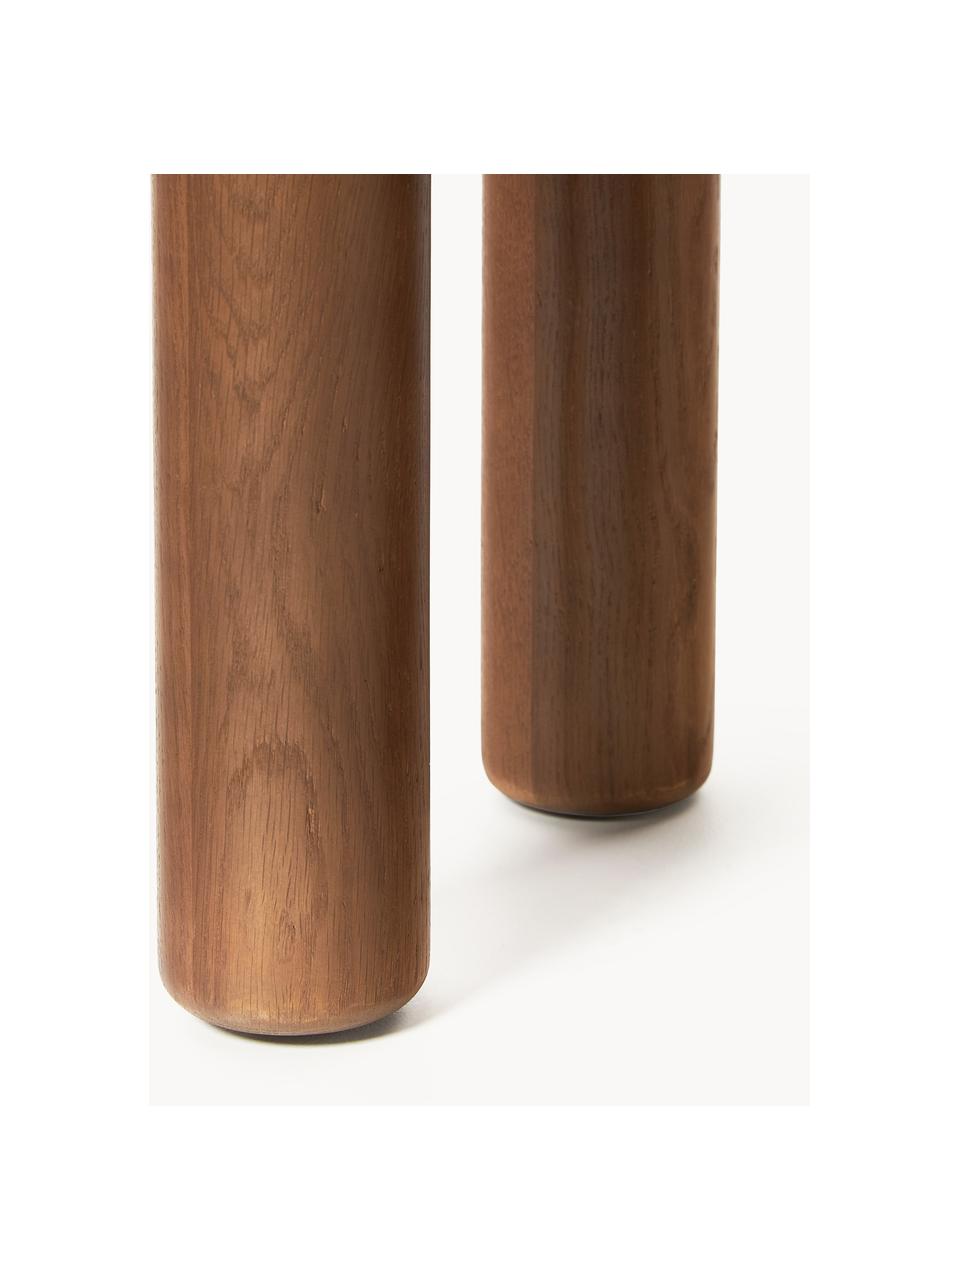 Runder Beistelltisch Didi aus Eichenholz, Massives Eichenholz, geölt

Dieses Produkt wird aus nachhaltig gewonnenem, FSC®-zertifiziertem Holz gefertigt., Walnussholz, Ø 40 x H 45 cm